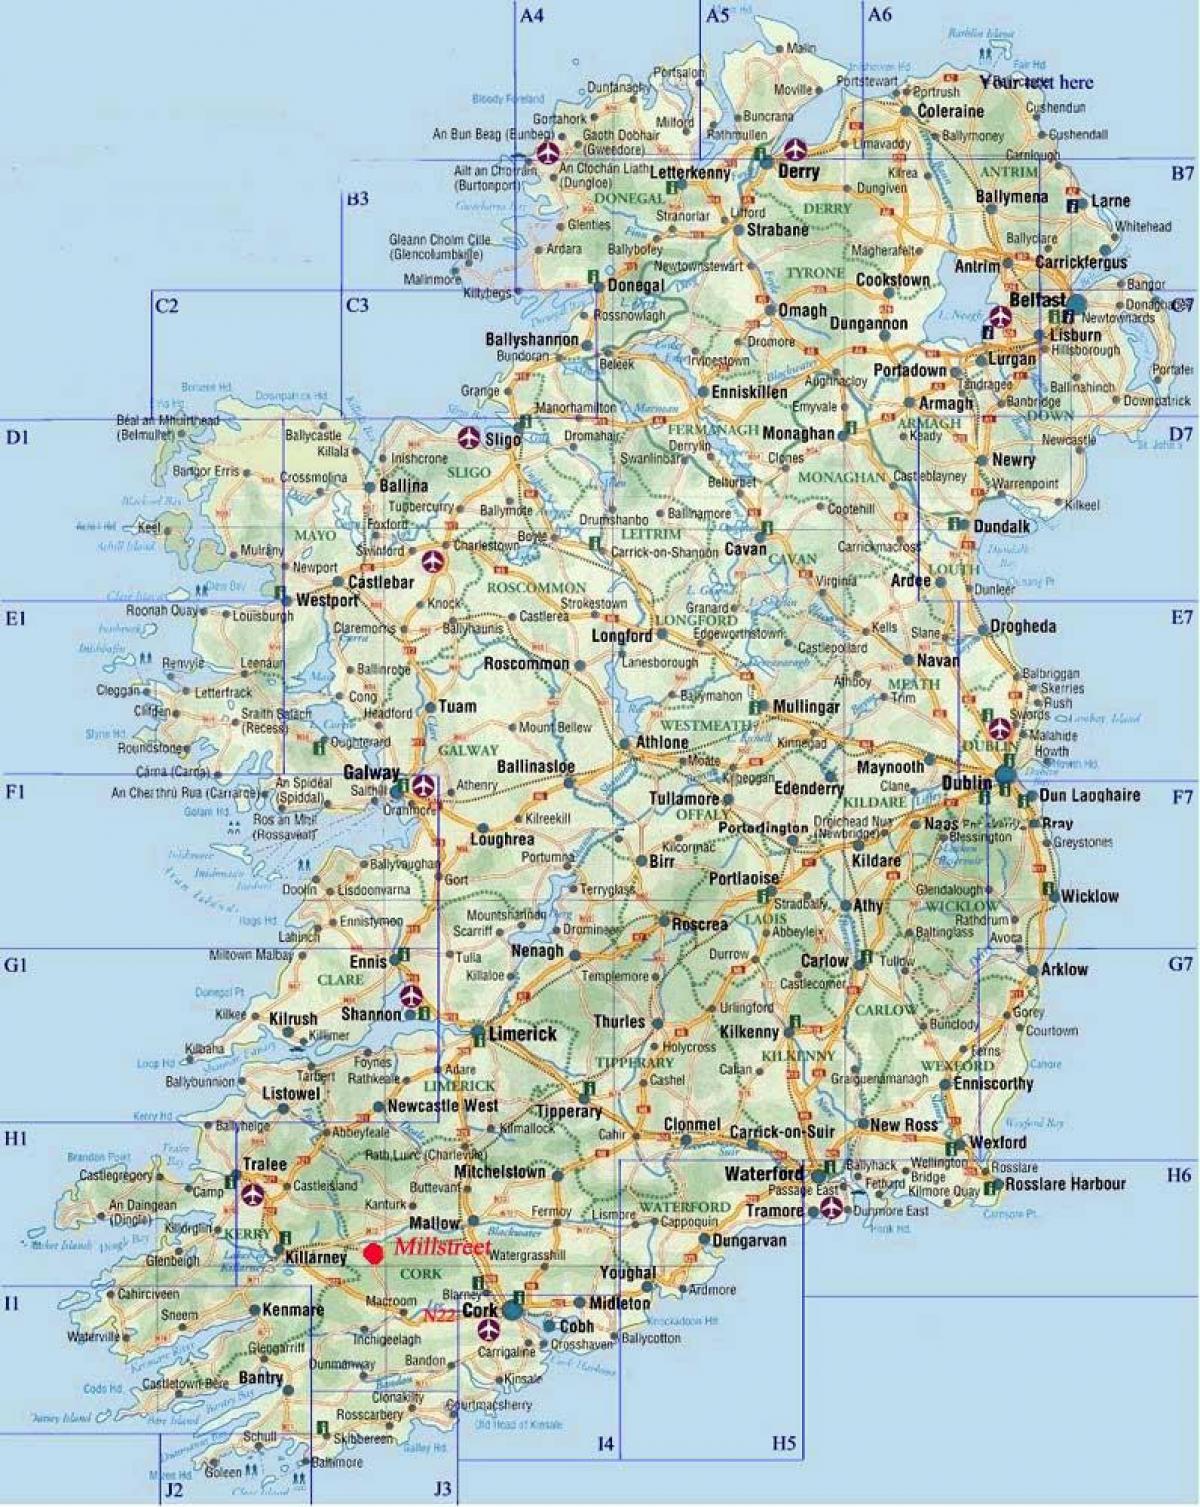 detaillierte Straßenkarte von Irland